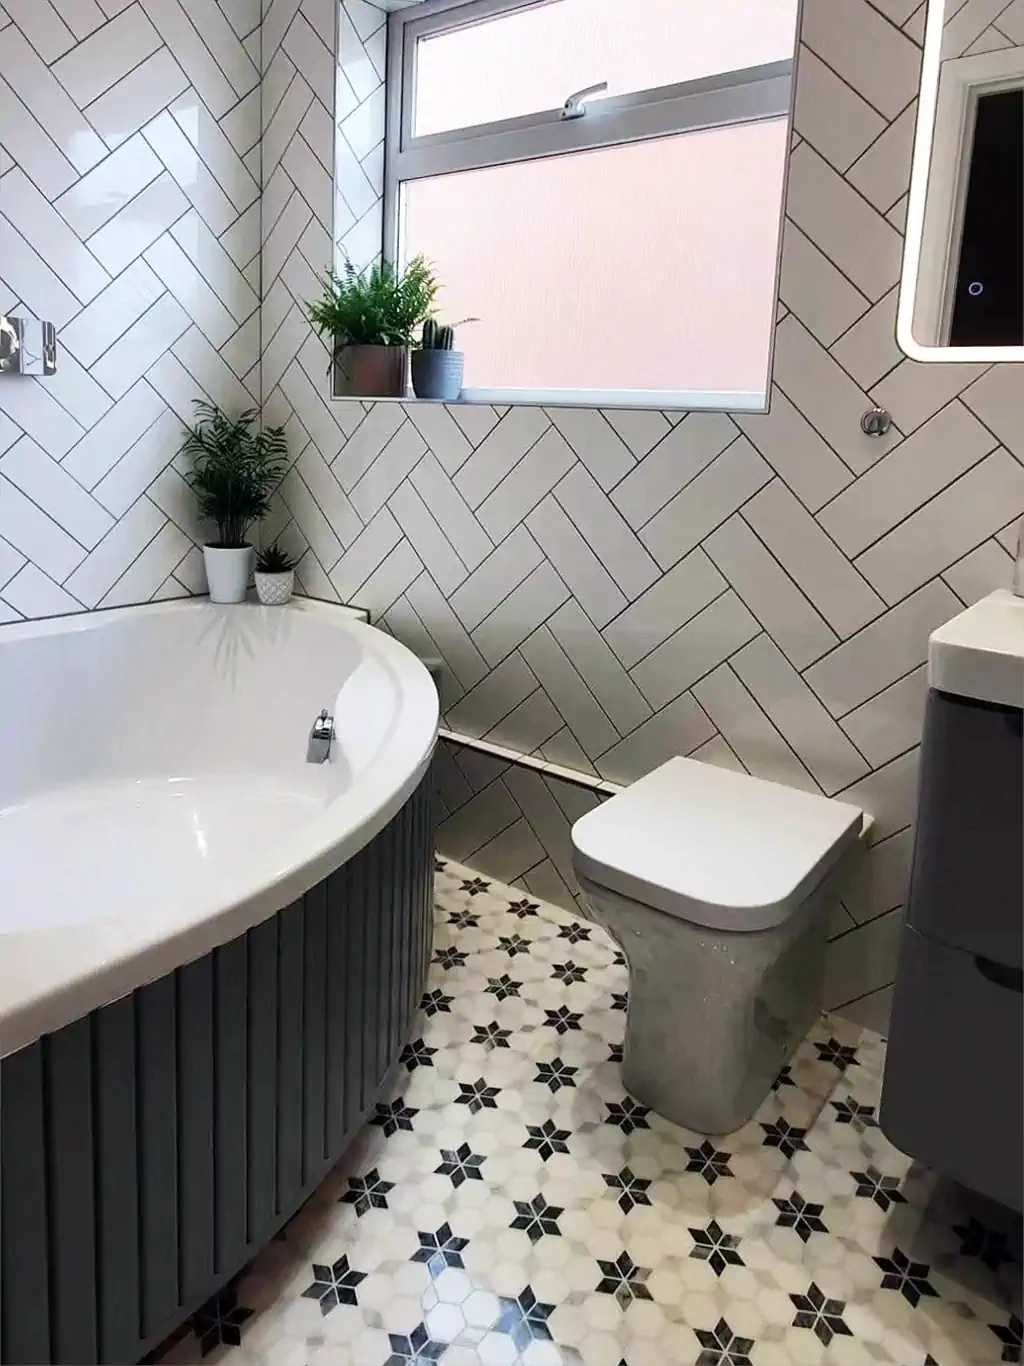 Hexagonal Star Marble Tile as Floor Tiles in the bathroom Design Ideas 01